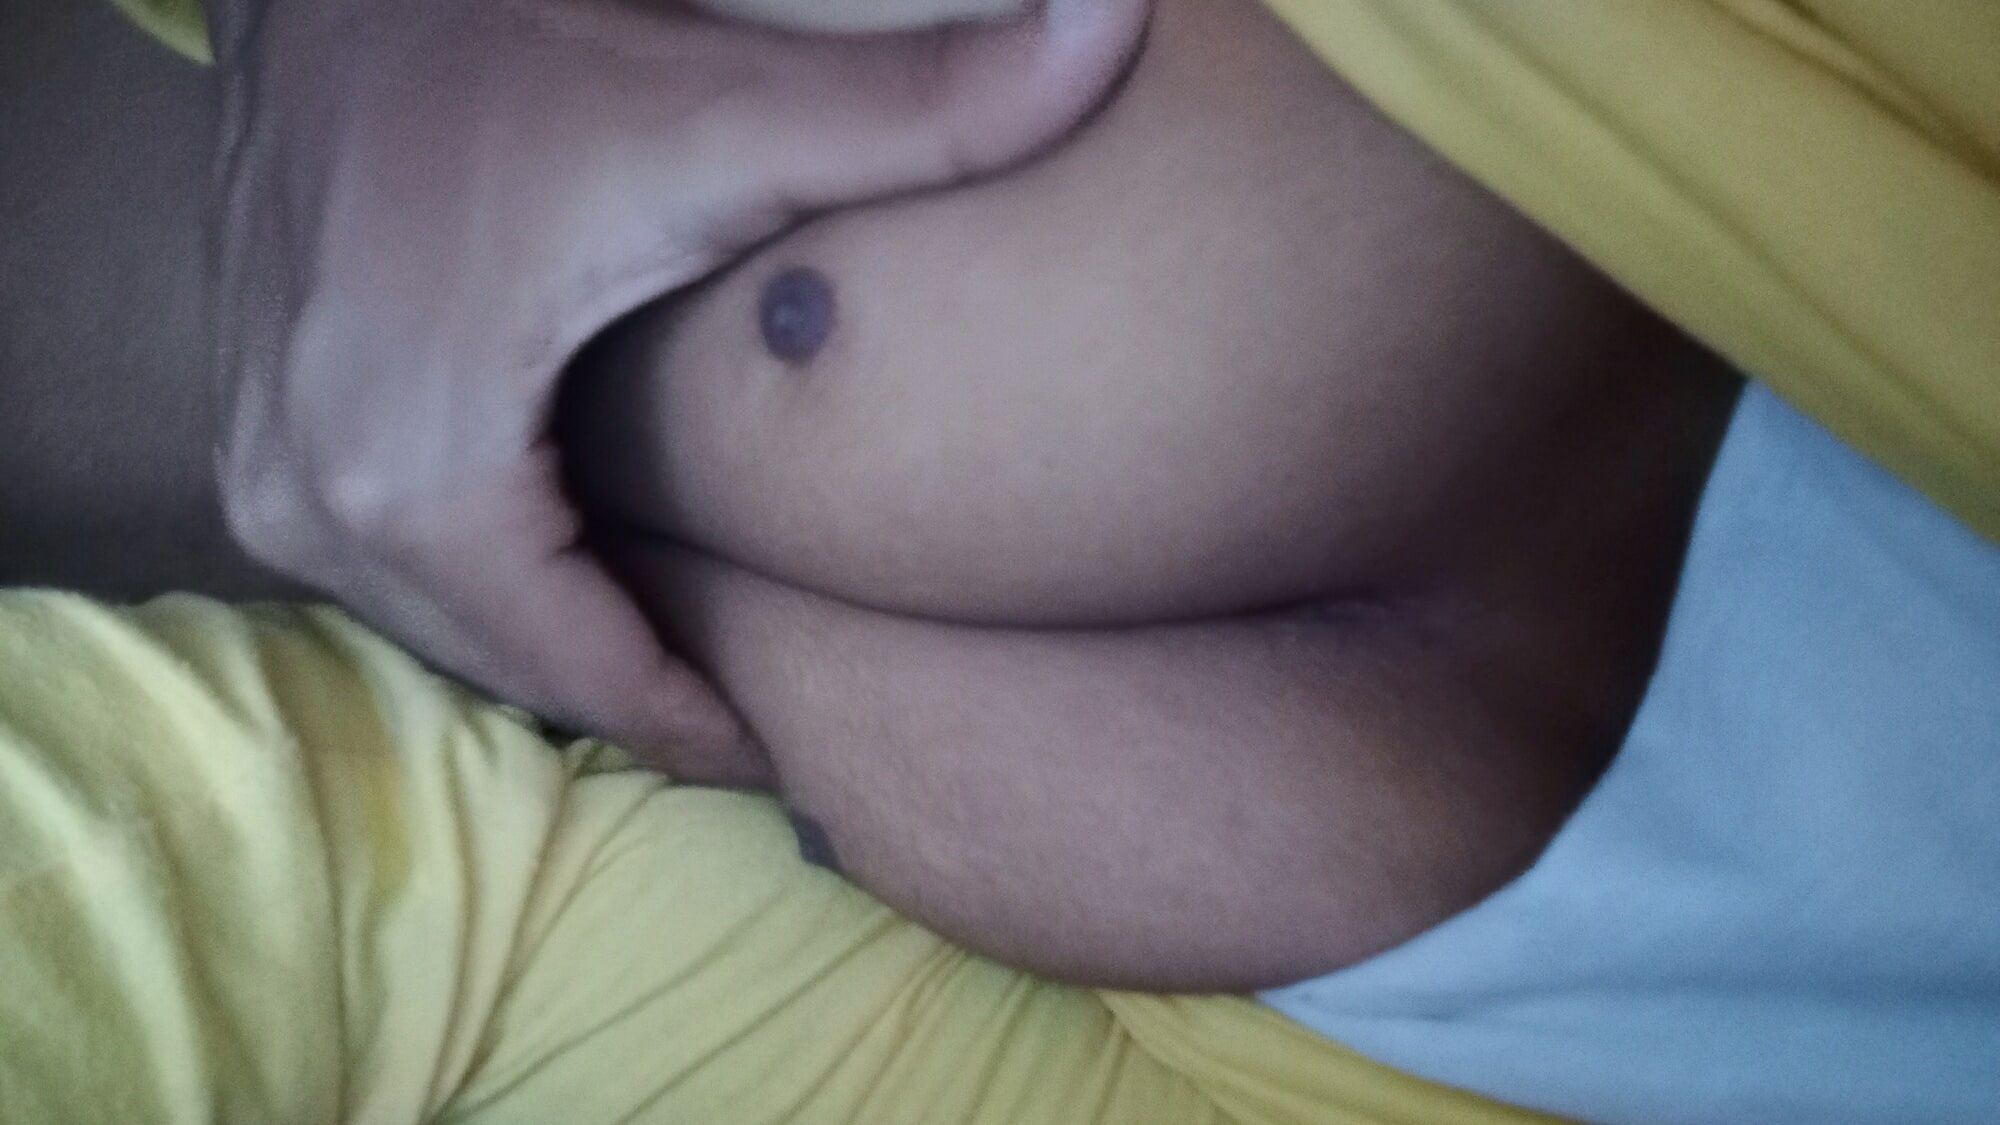 Hot boobs #2